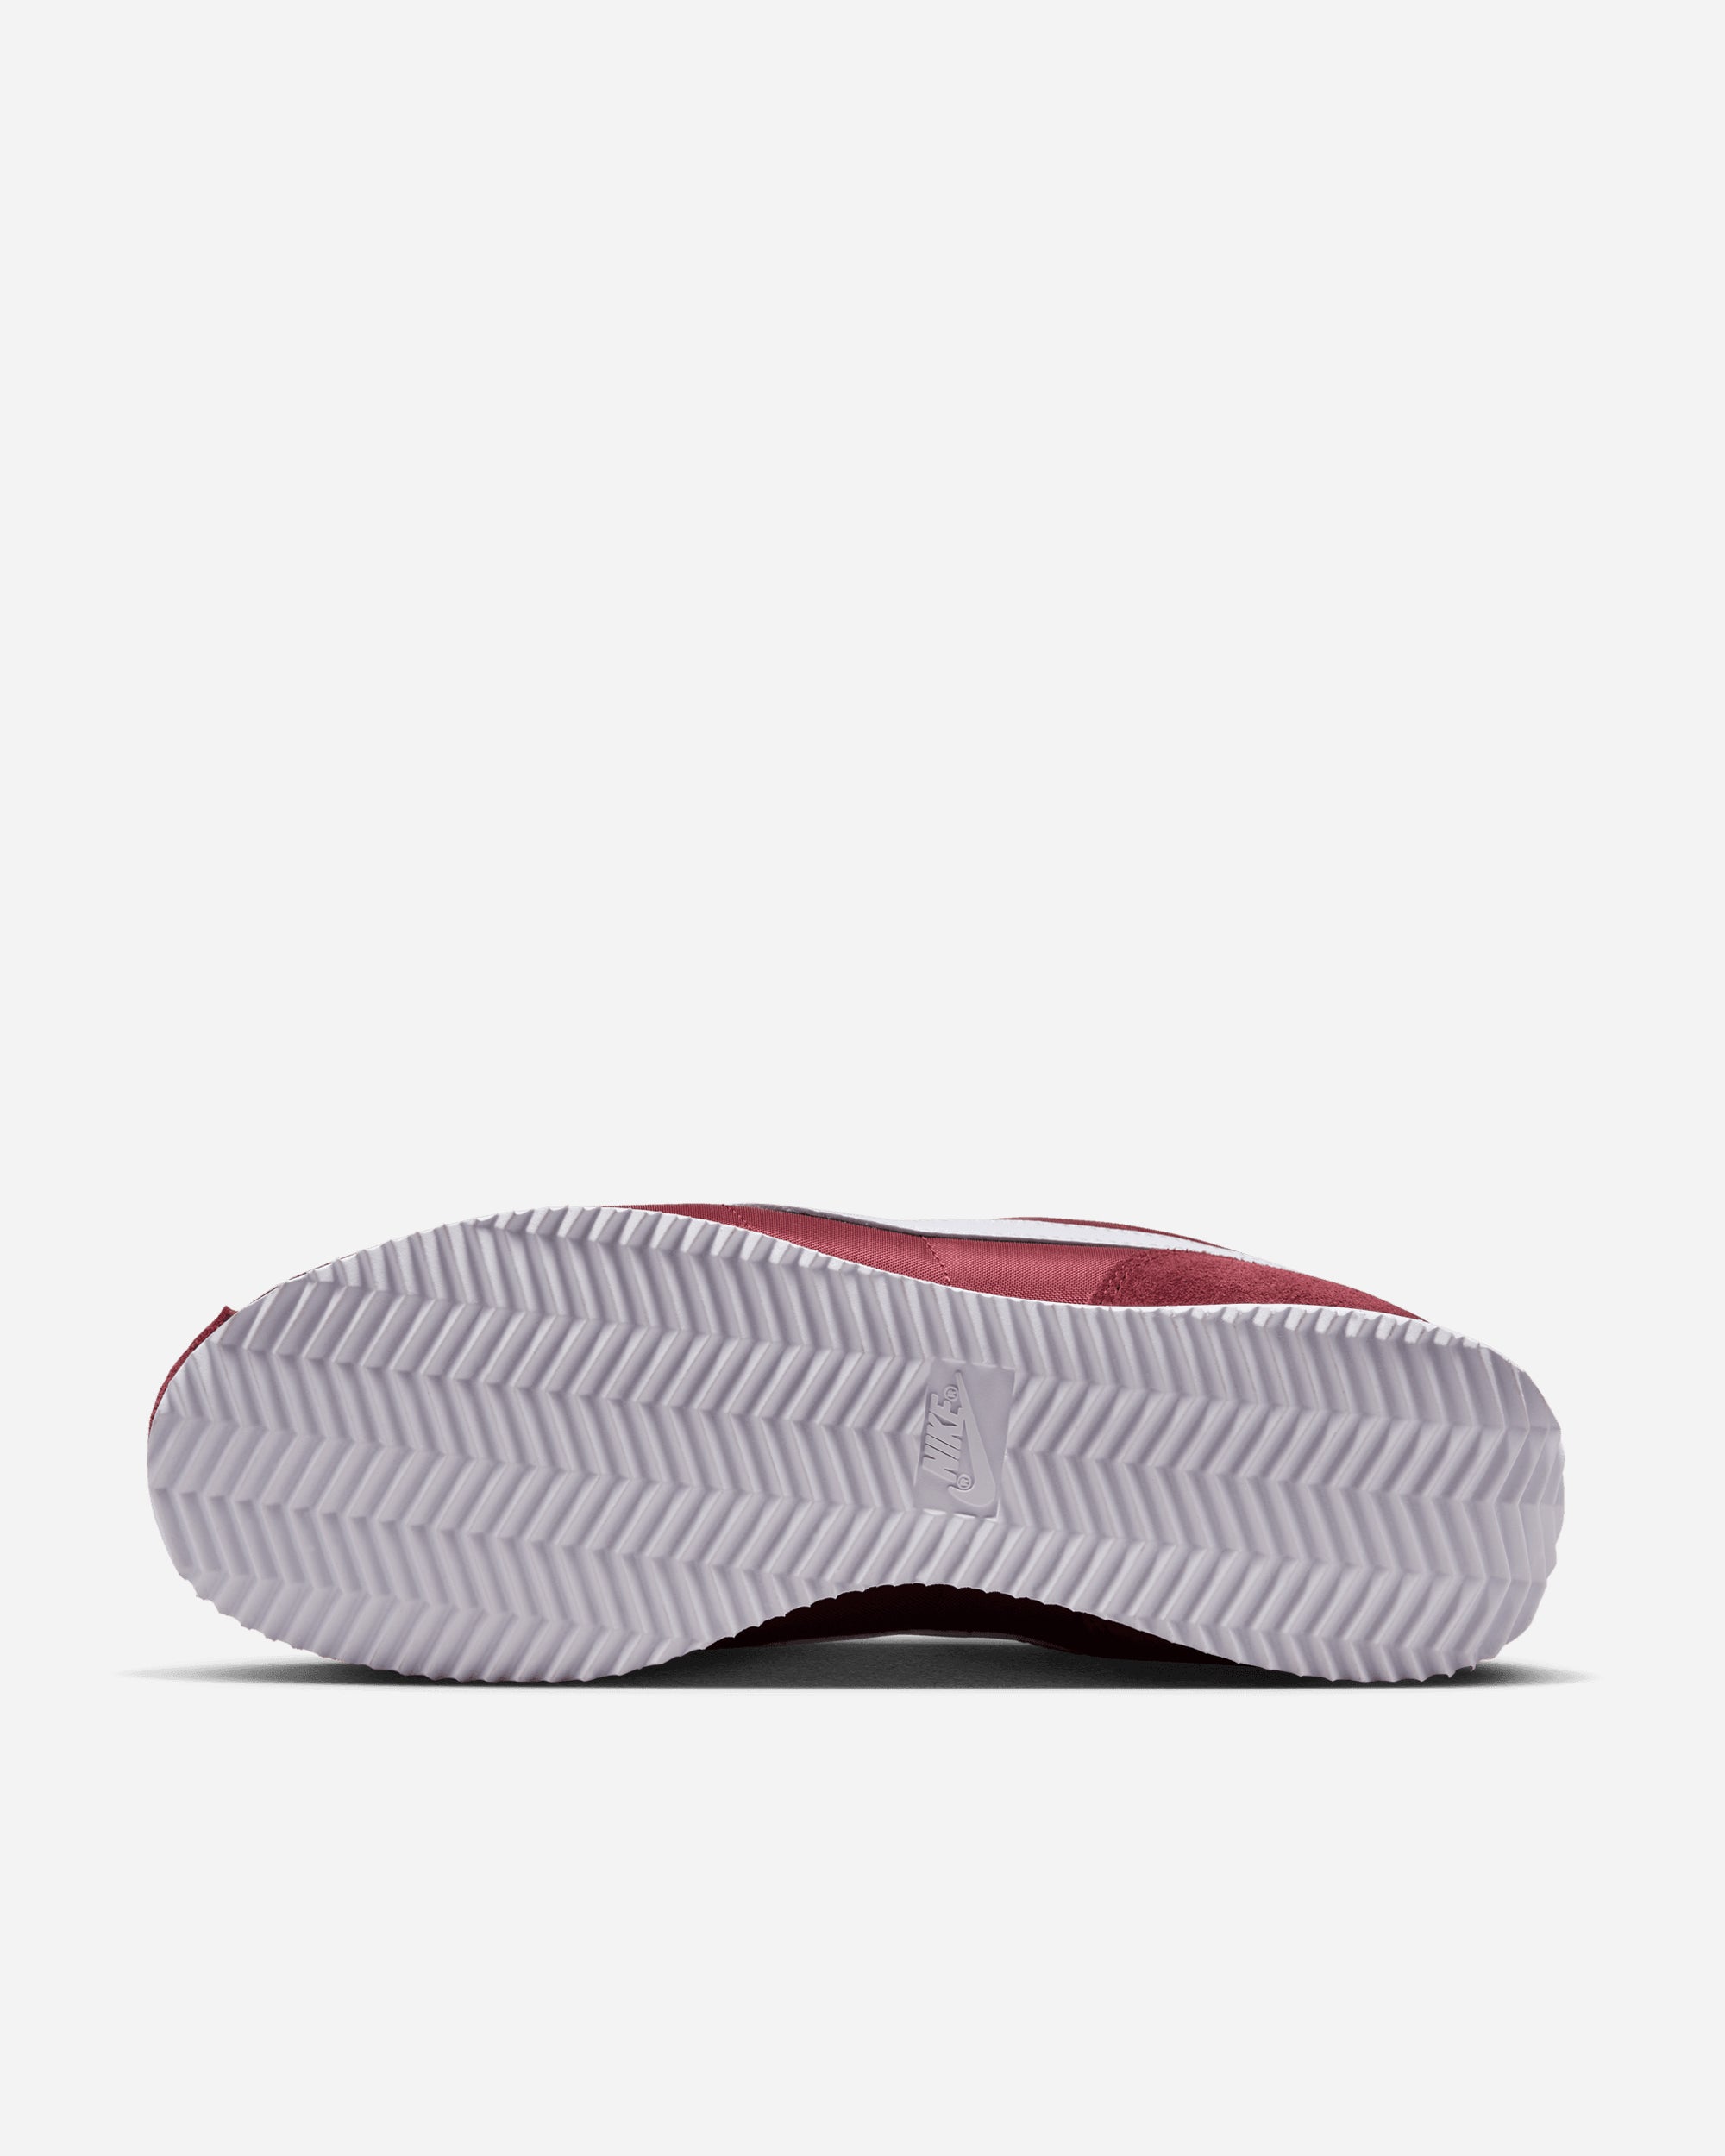 Nike Cortez TEAM RED/WHITE DZ2795-600